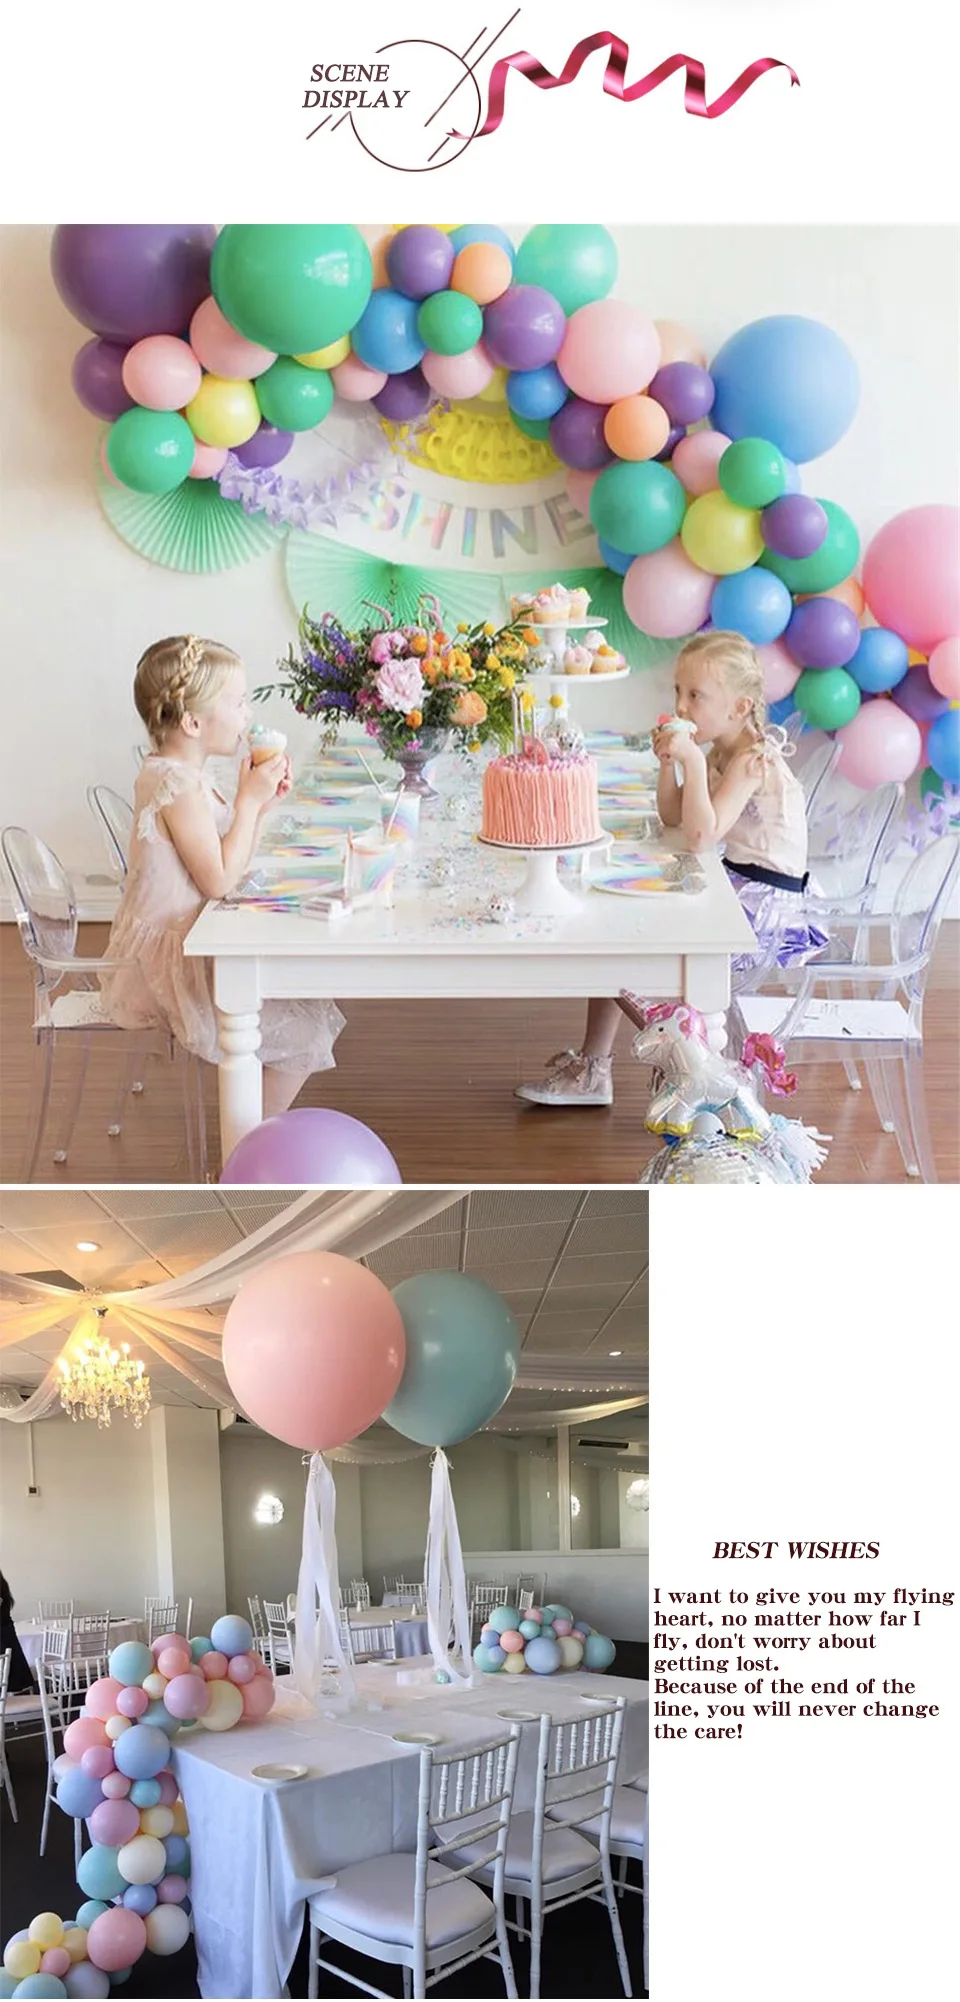 NASTASIA 100 шт./лот разноцветные латексные шары Макарон 5 дюймов Свадебные украшения Воздушные шары День рождения